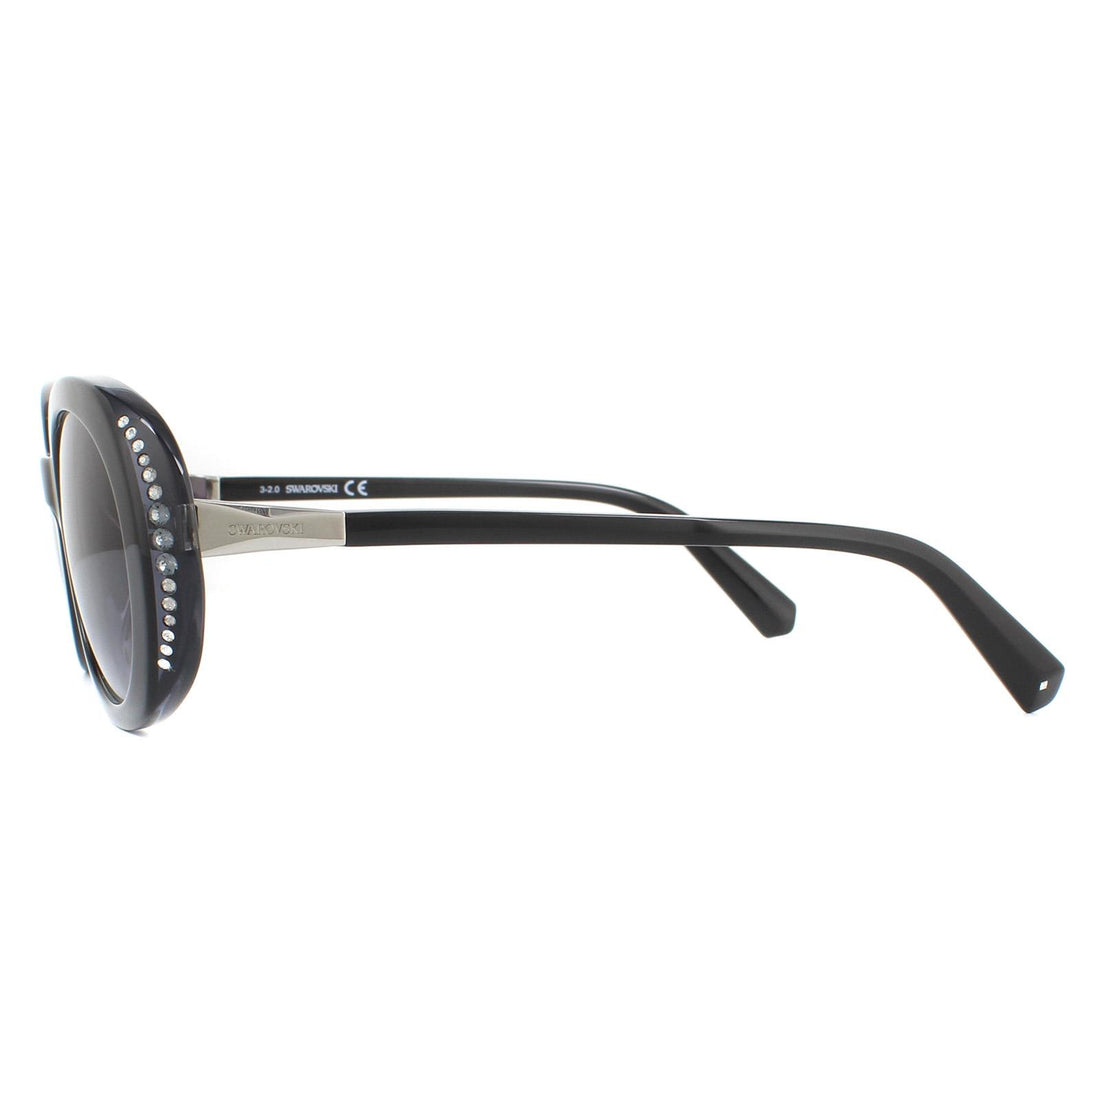 Swarovski Sunglasses SK0281/S 05B Black Grey Gradient